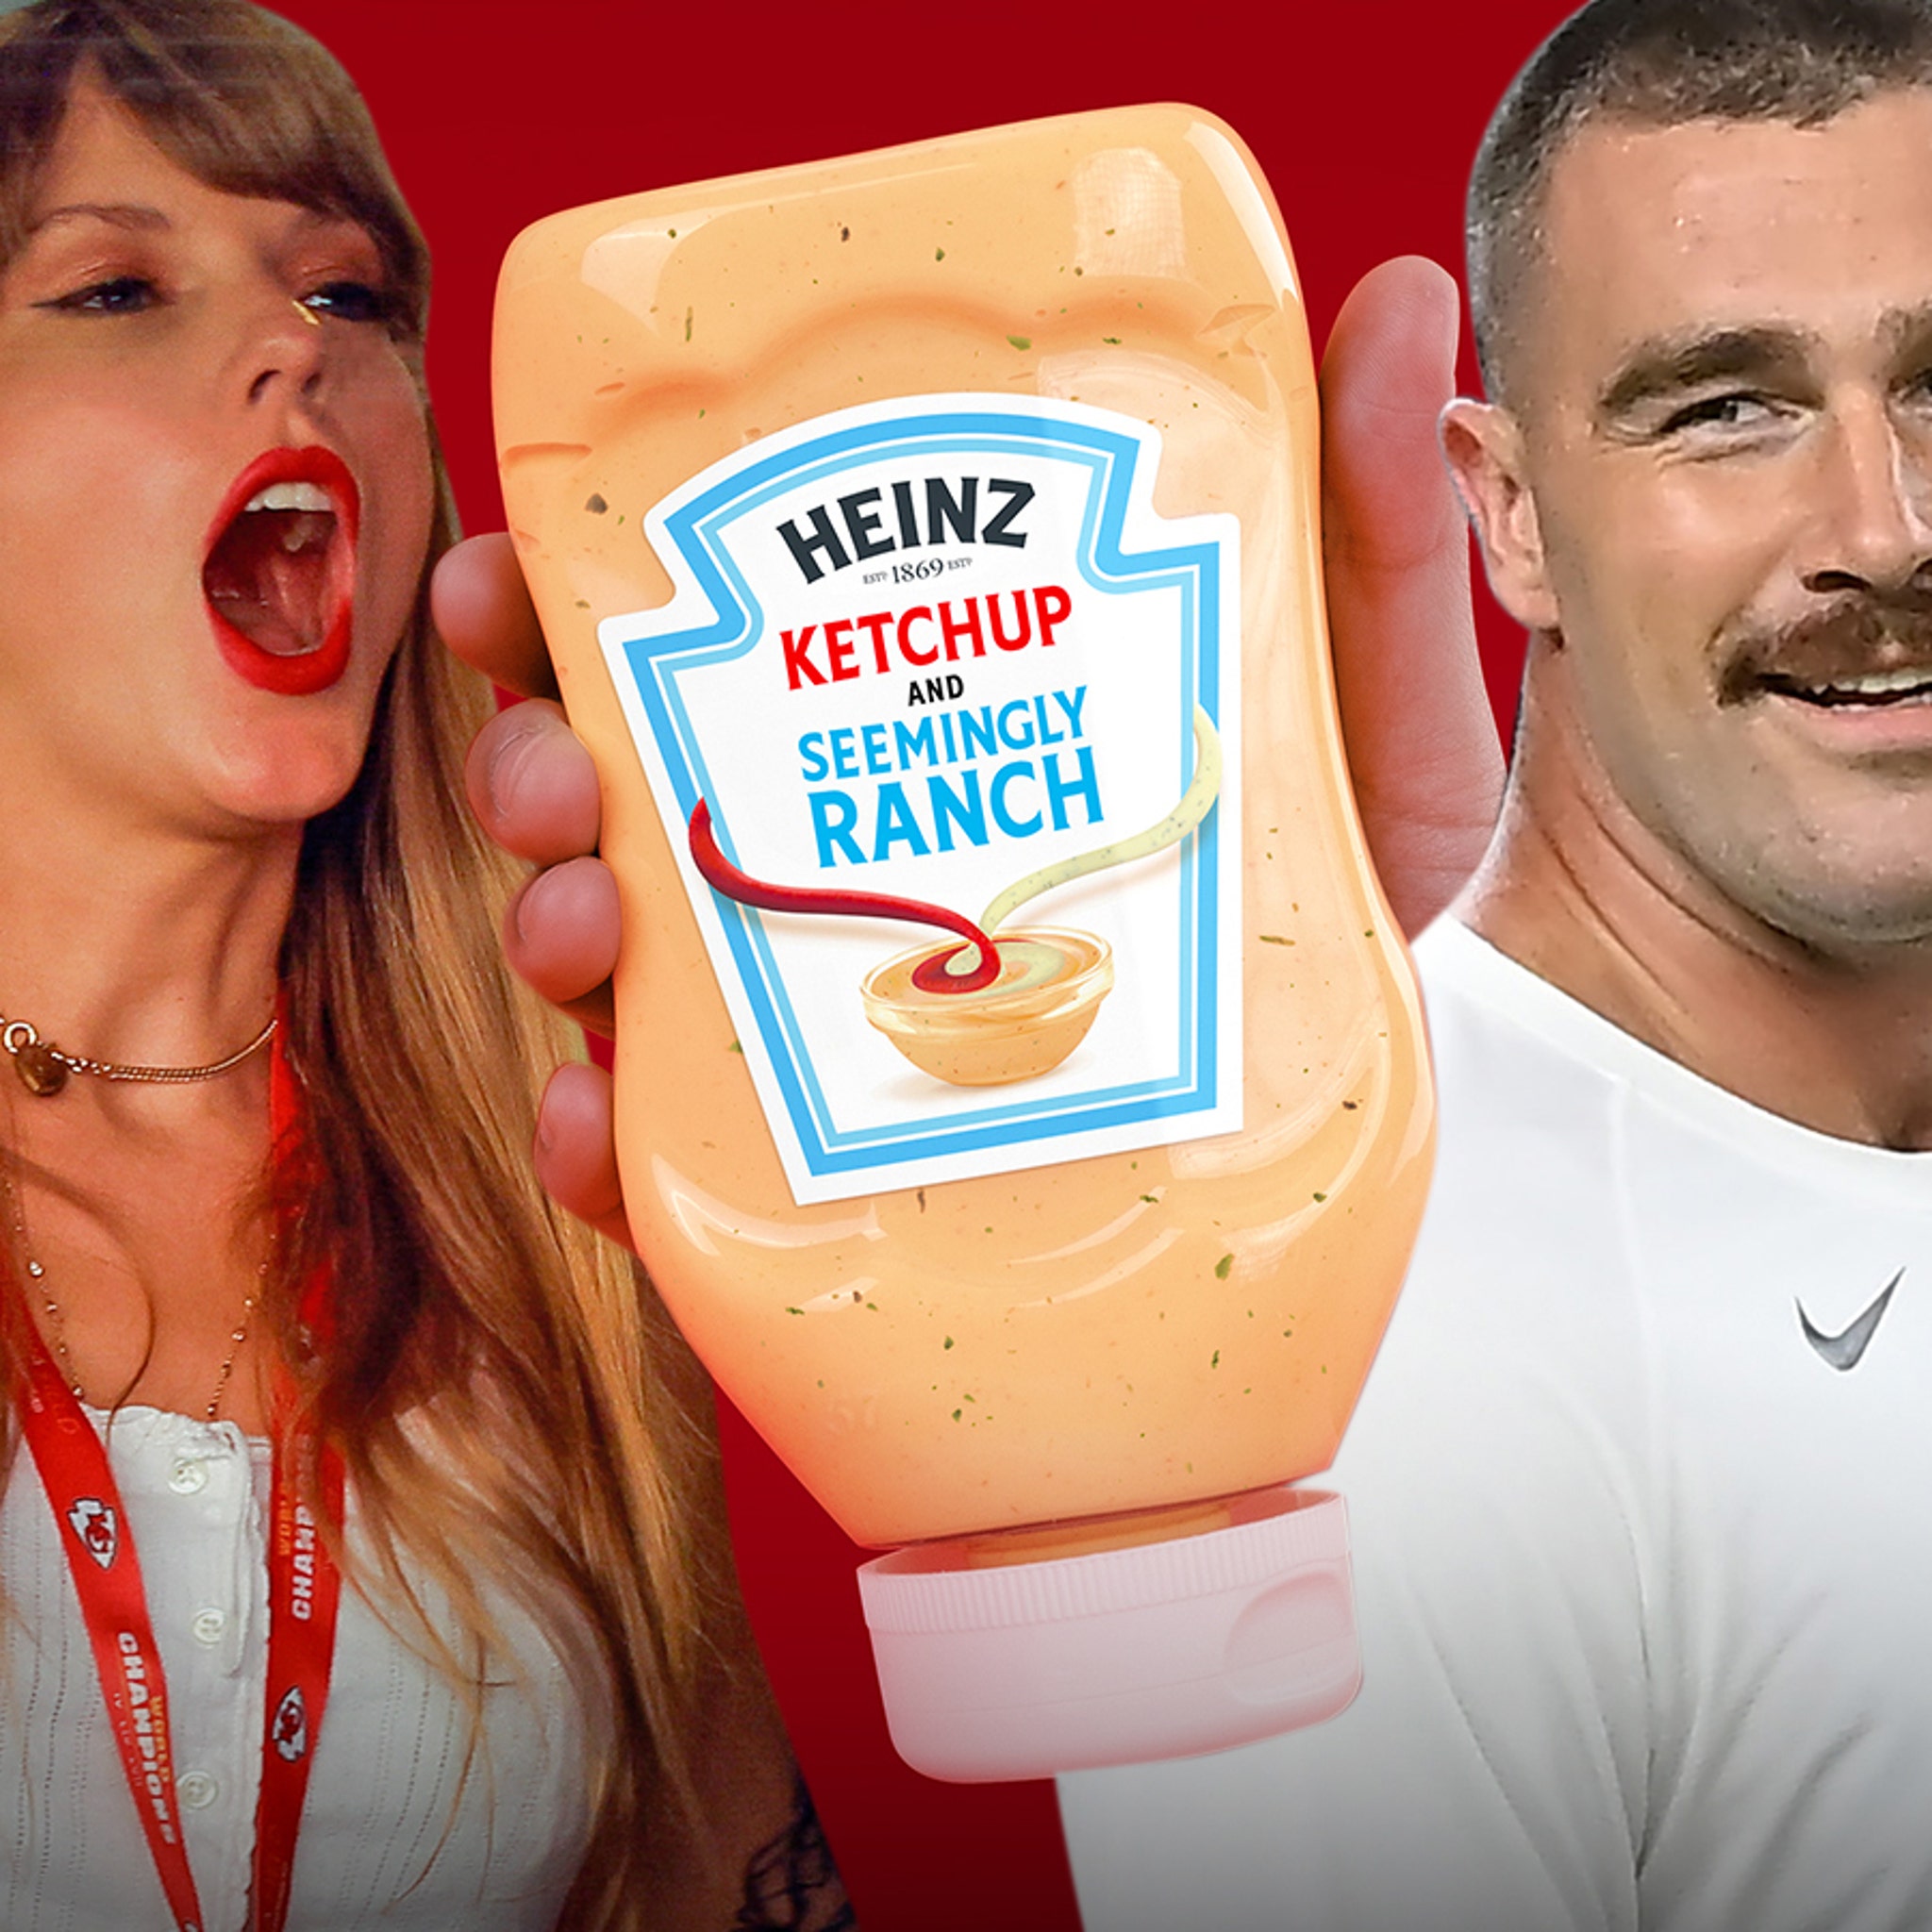 Après le match des Chiefs: Heinz profite aussi de l'effet Taylor Swift